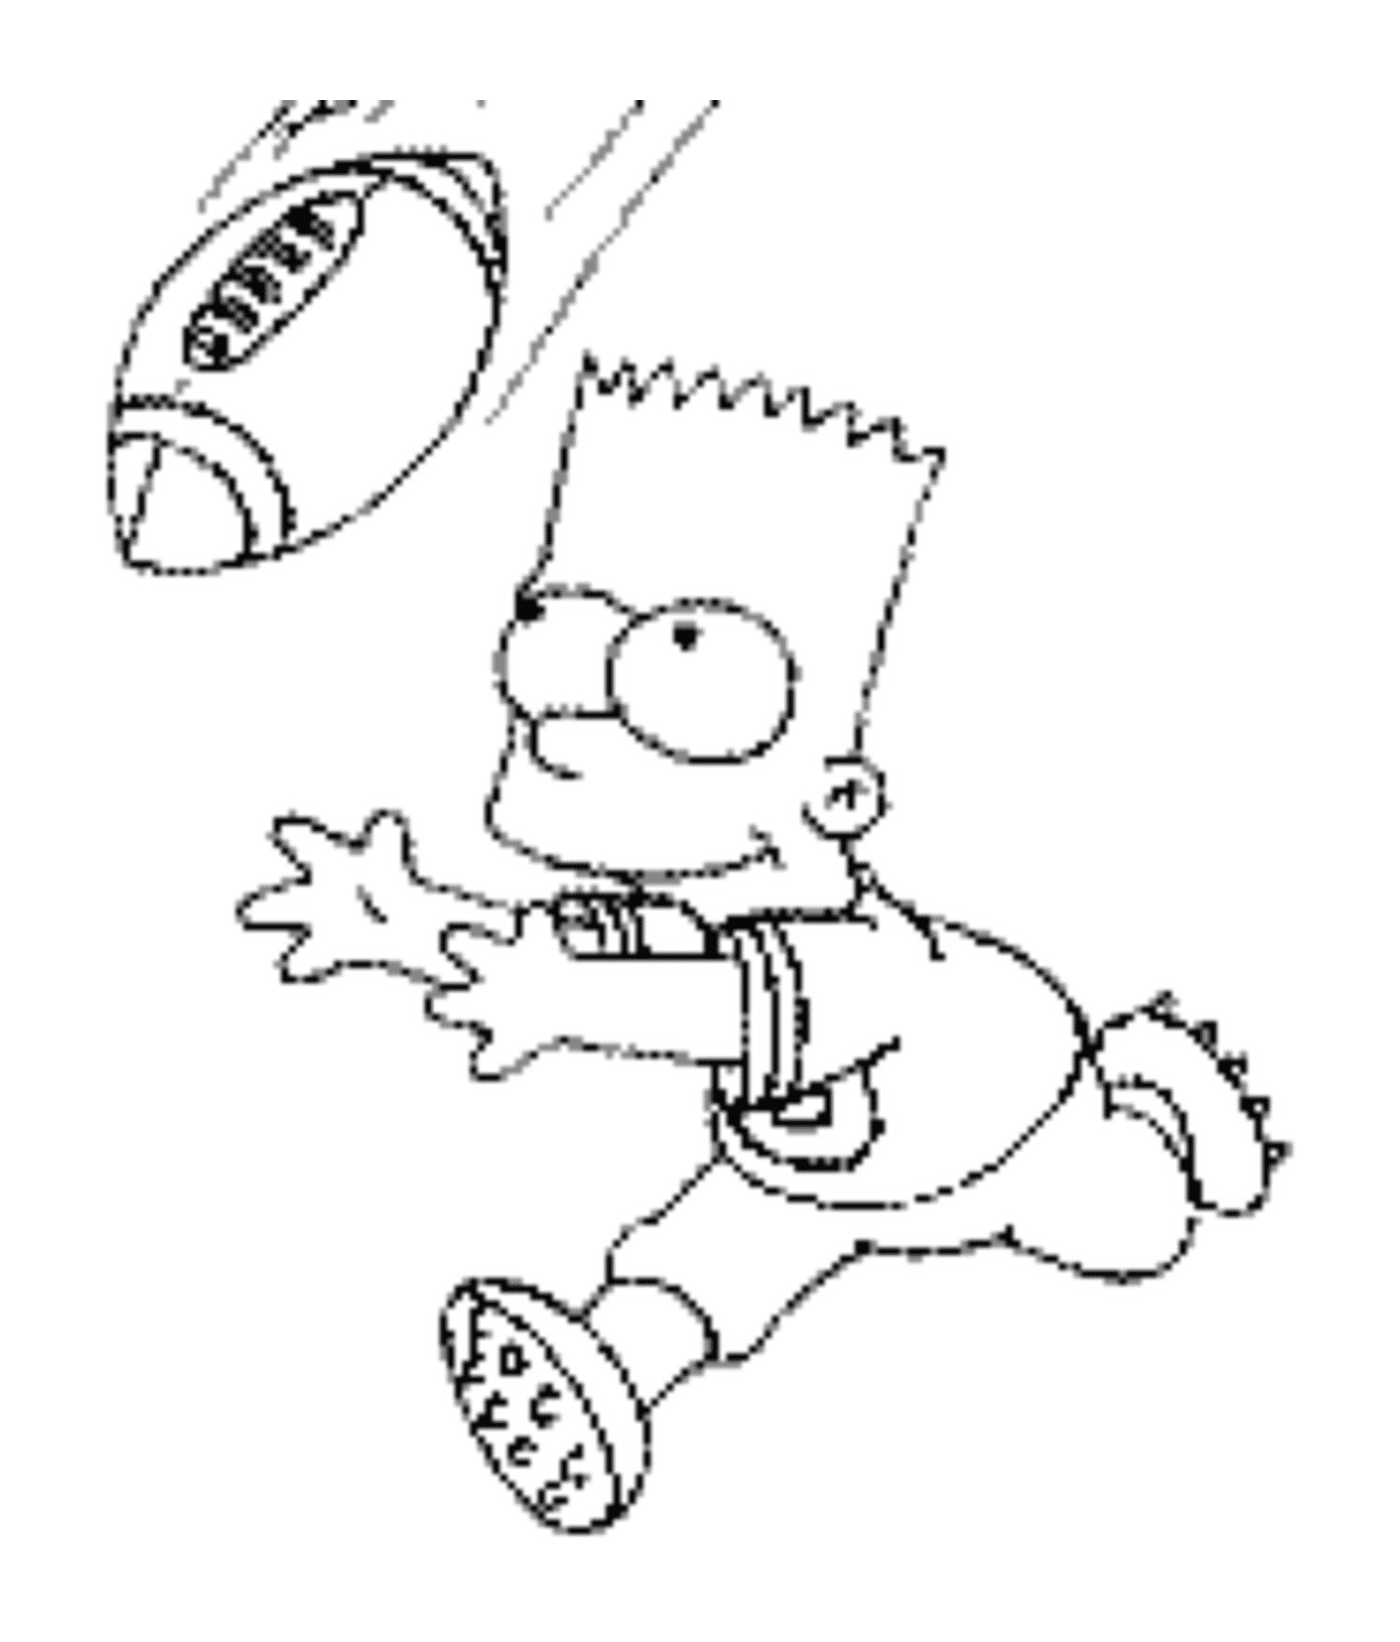  Bart spielt American Football 